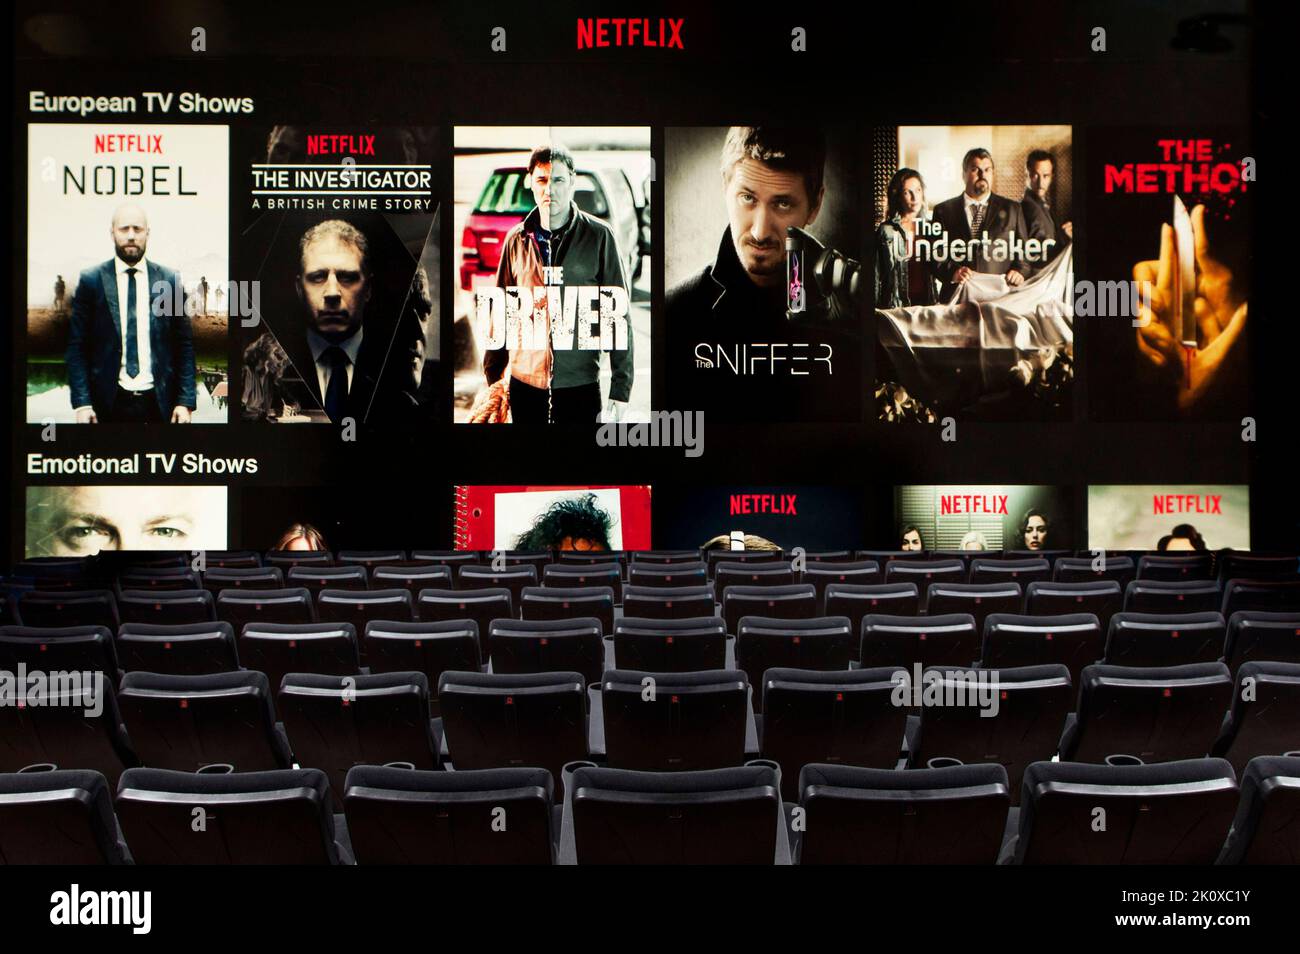 Pantalla Netflix en una sala de cine Foto de stock